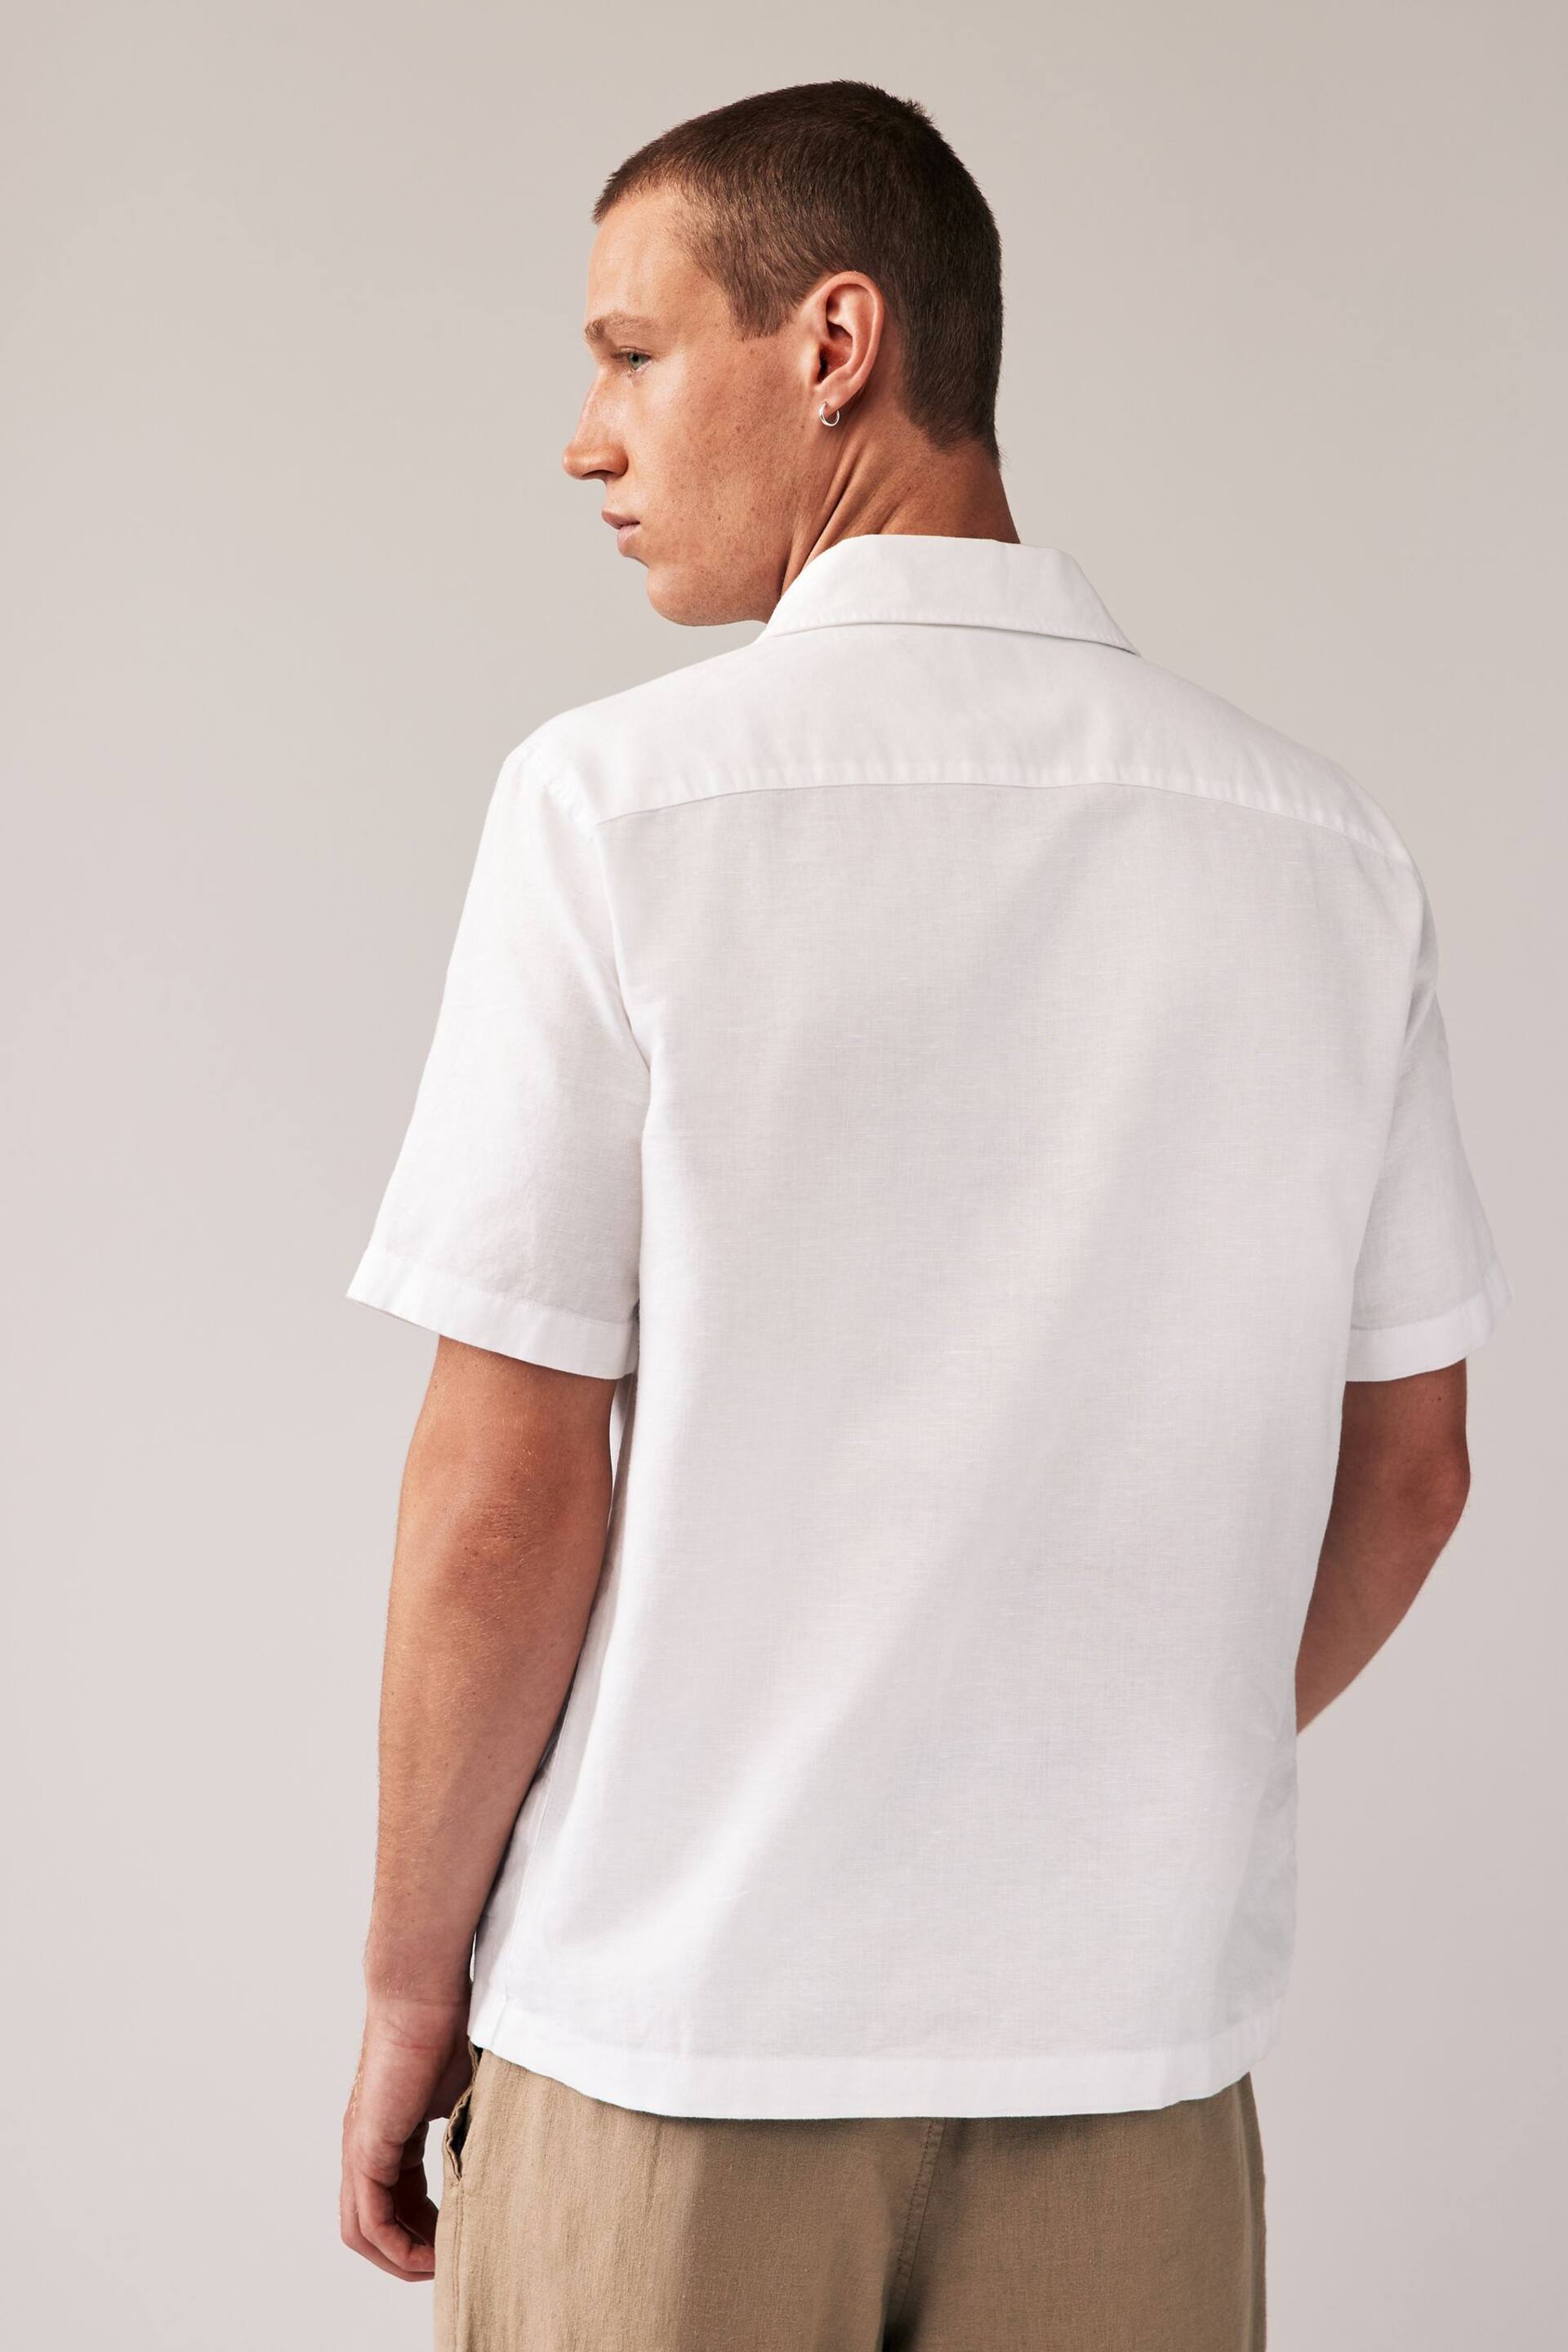 White Cuban Collar Linen Blend Short Sleeve Shirt - Image 3 of 7